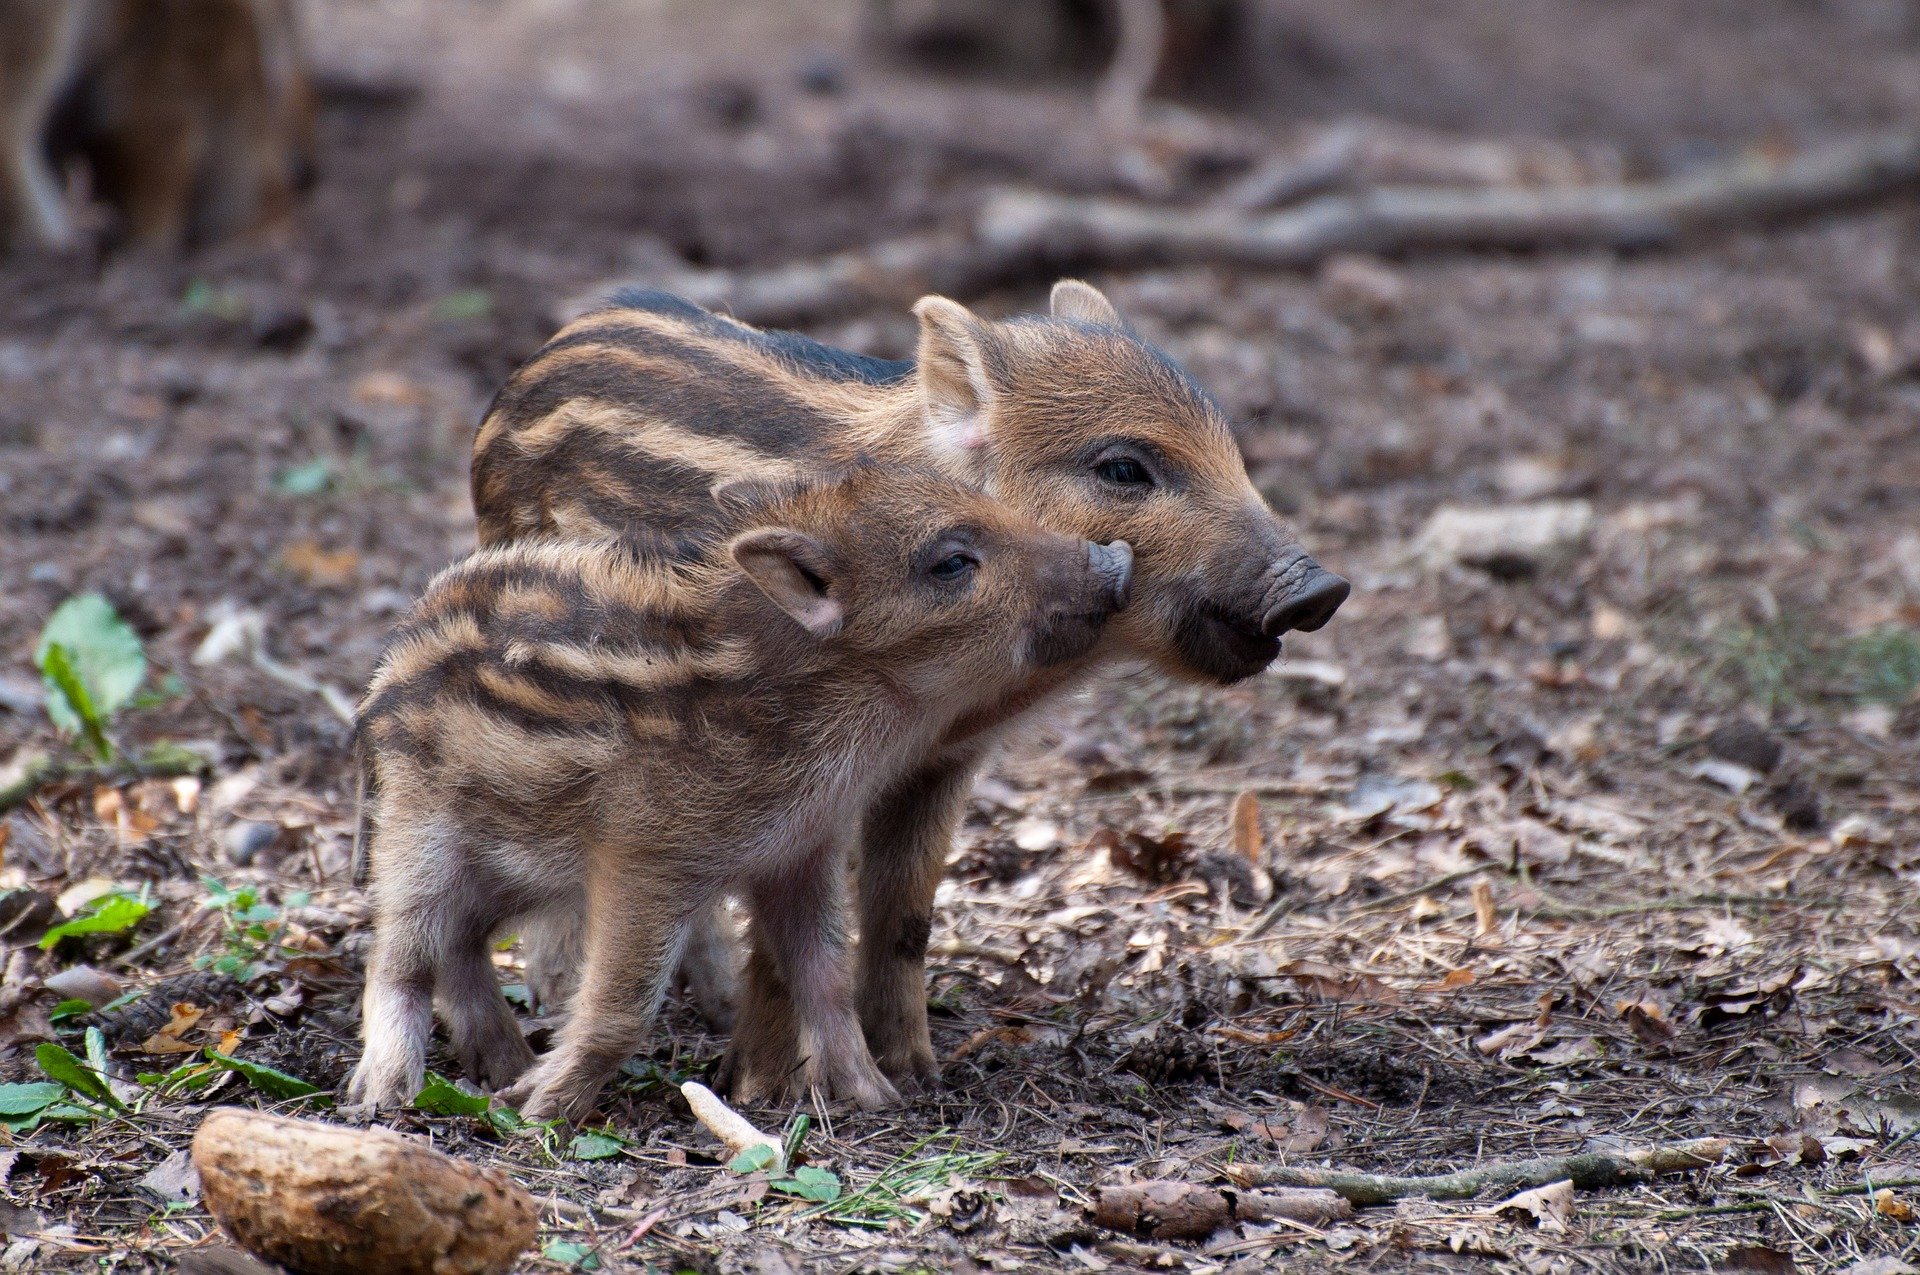 wildschweinchen copyright magenbrot via pixabay.jpg